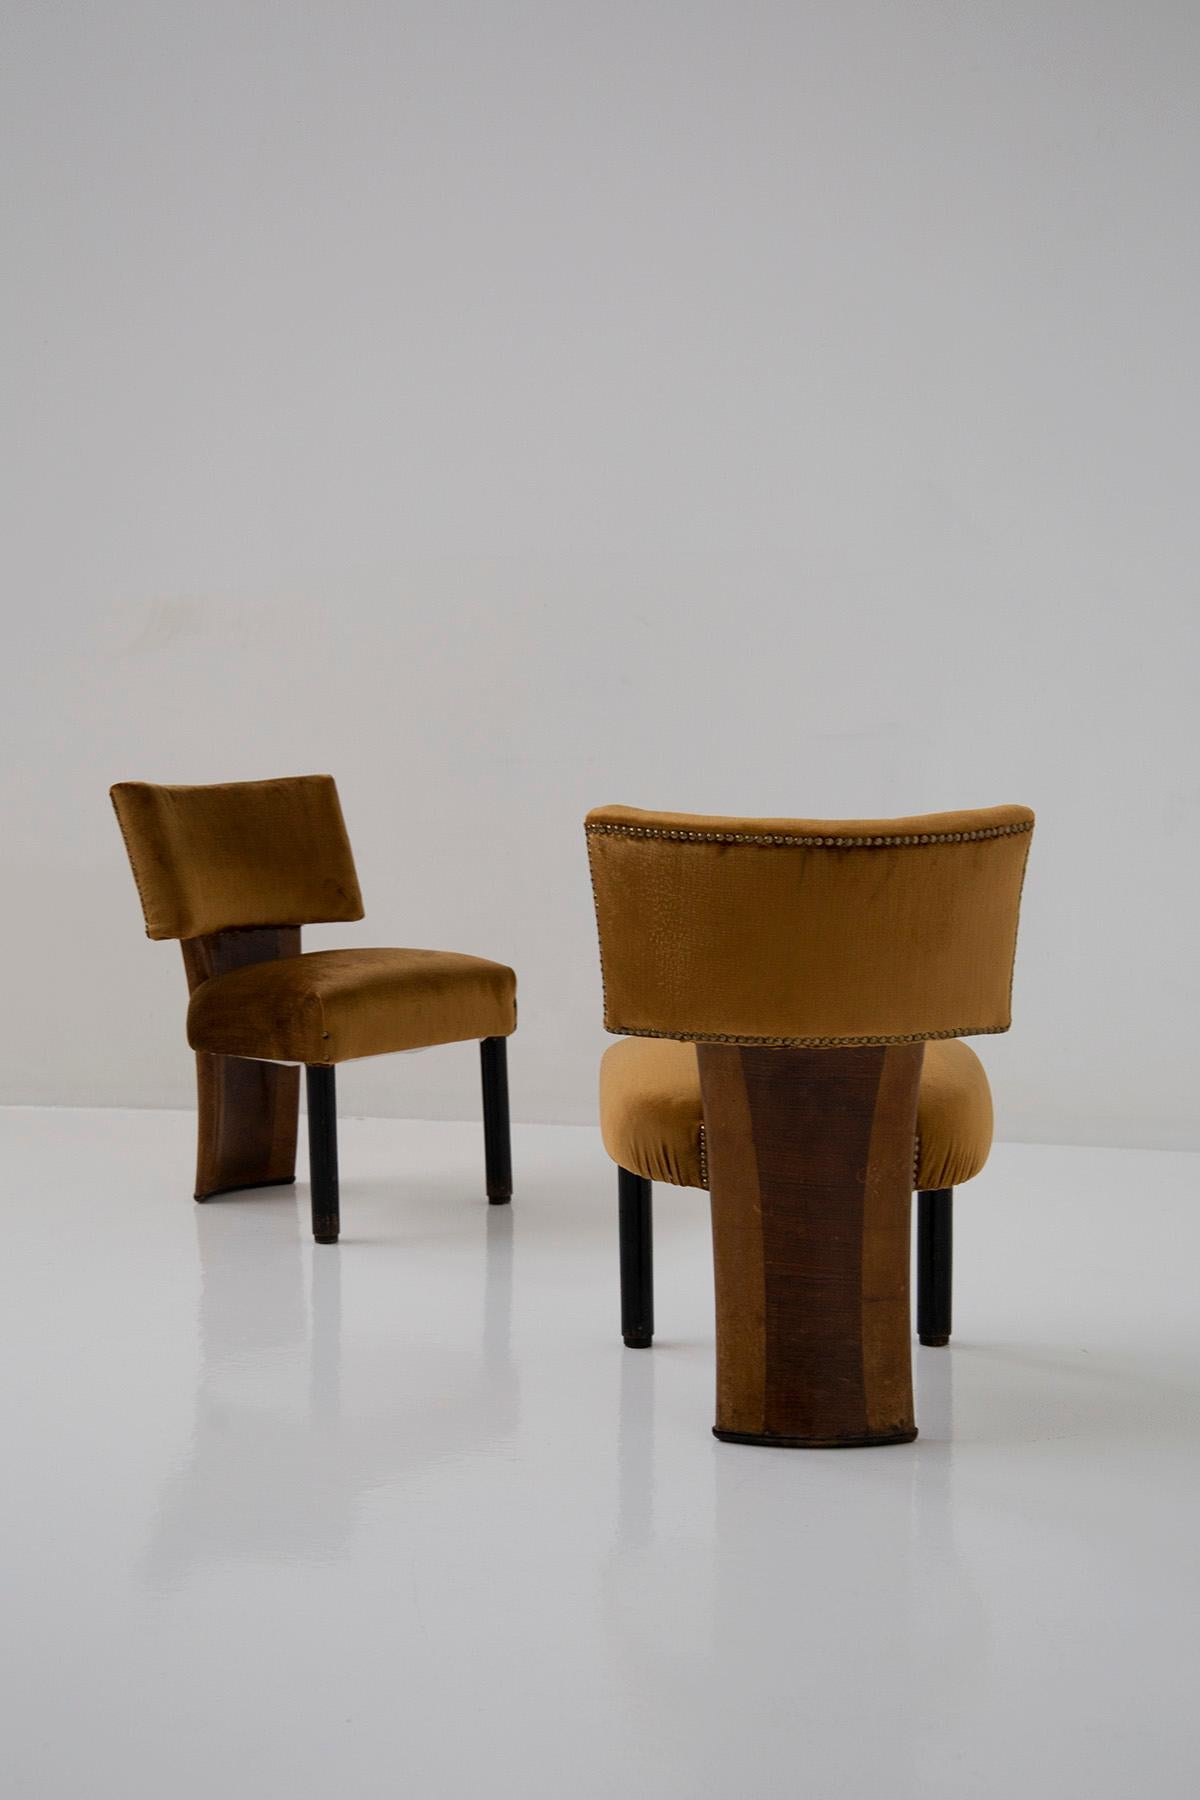 Wir stellen Ihnen ein prächtiges Sesselpaar vor, das dem berühmten Designer Gio Ponti zugeschrieben wird und aus den 1930er bis 40er Jahren stammt. Diese Sessel repräsentieren nicht nur eine bedeutende Epoche des italienischen Designs, sondern sind